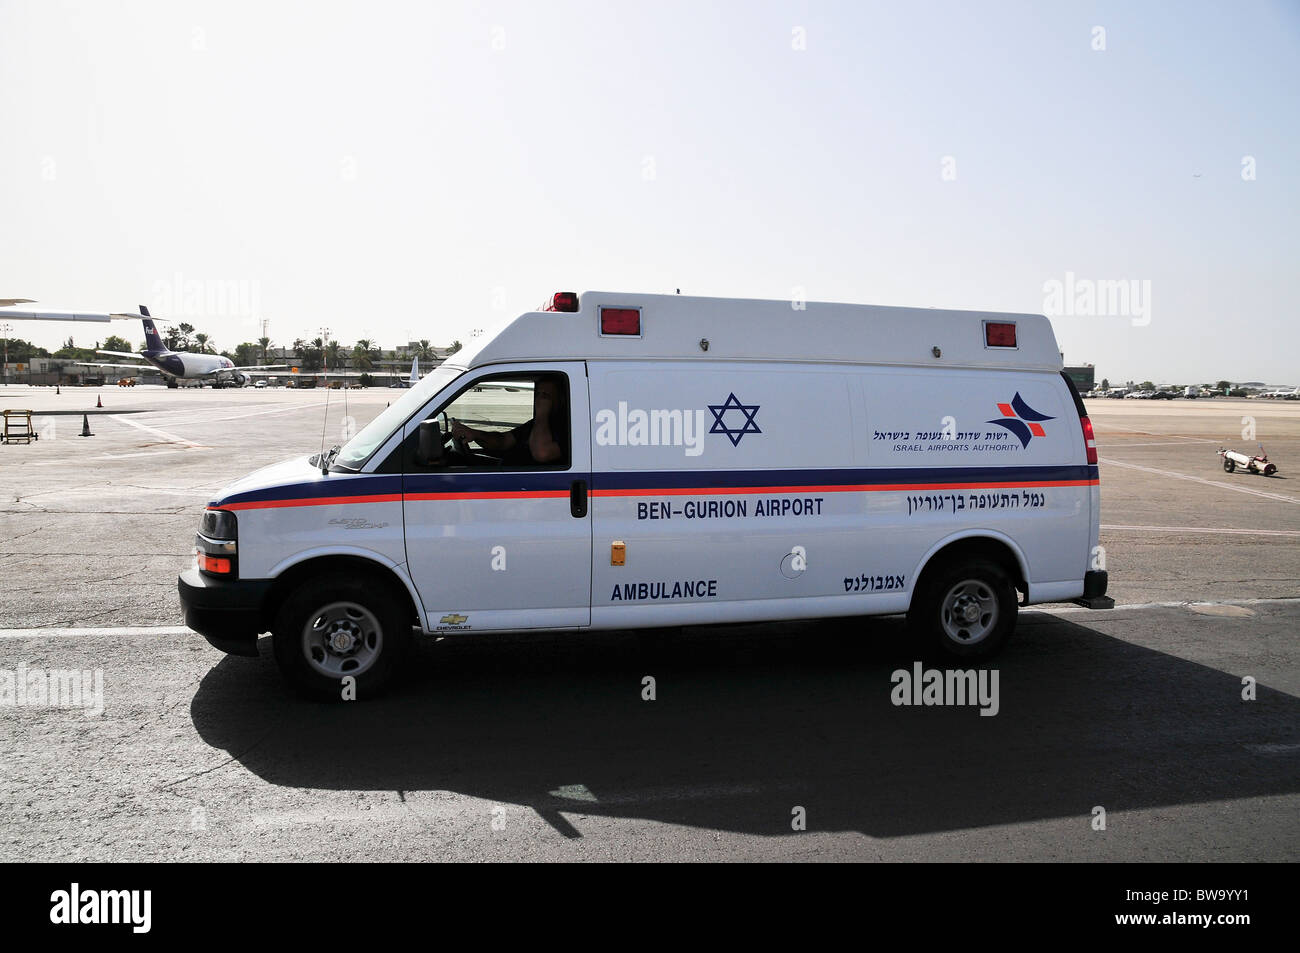 L'aéroport international Ben Gourion, Israël et de sauvetage d'ambulance, les services de lutte contre les incendies Banque D'Images